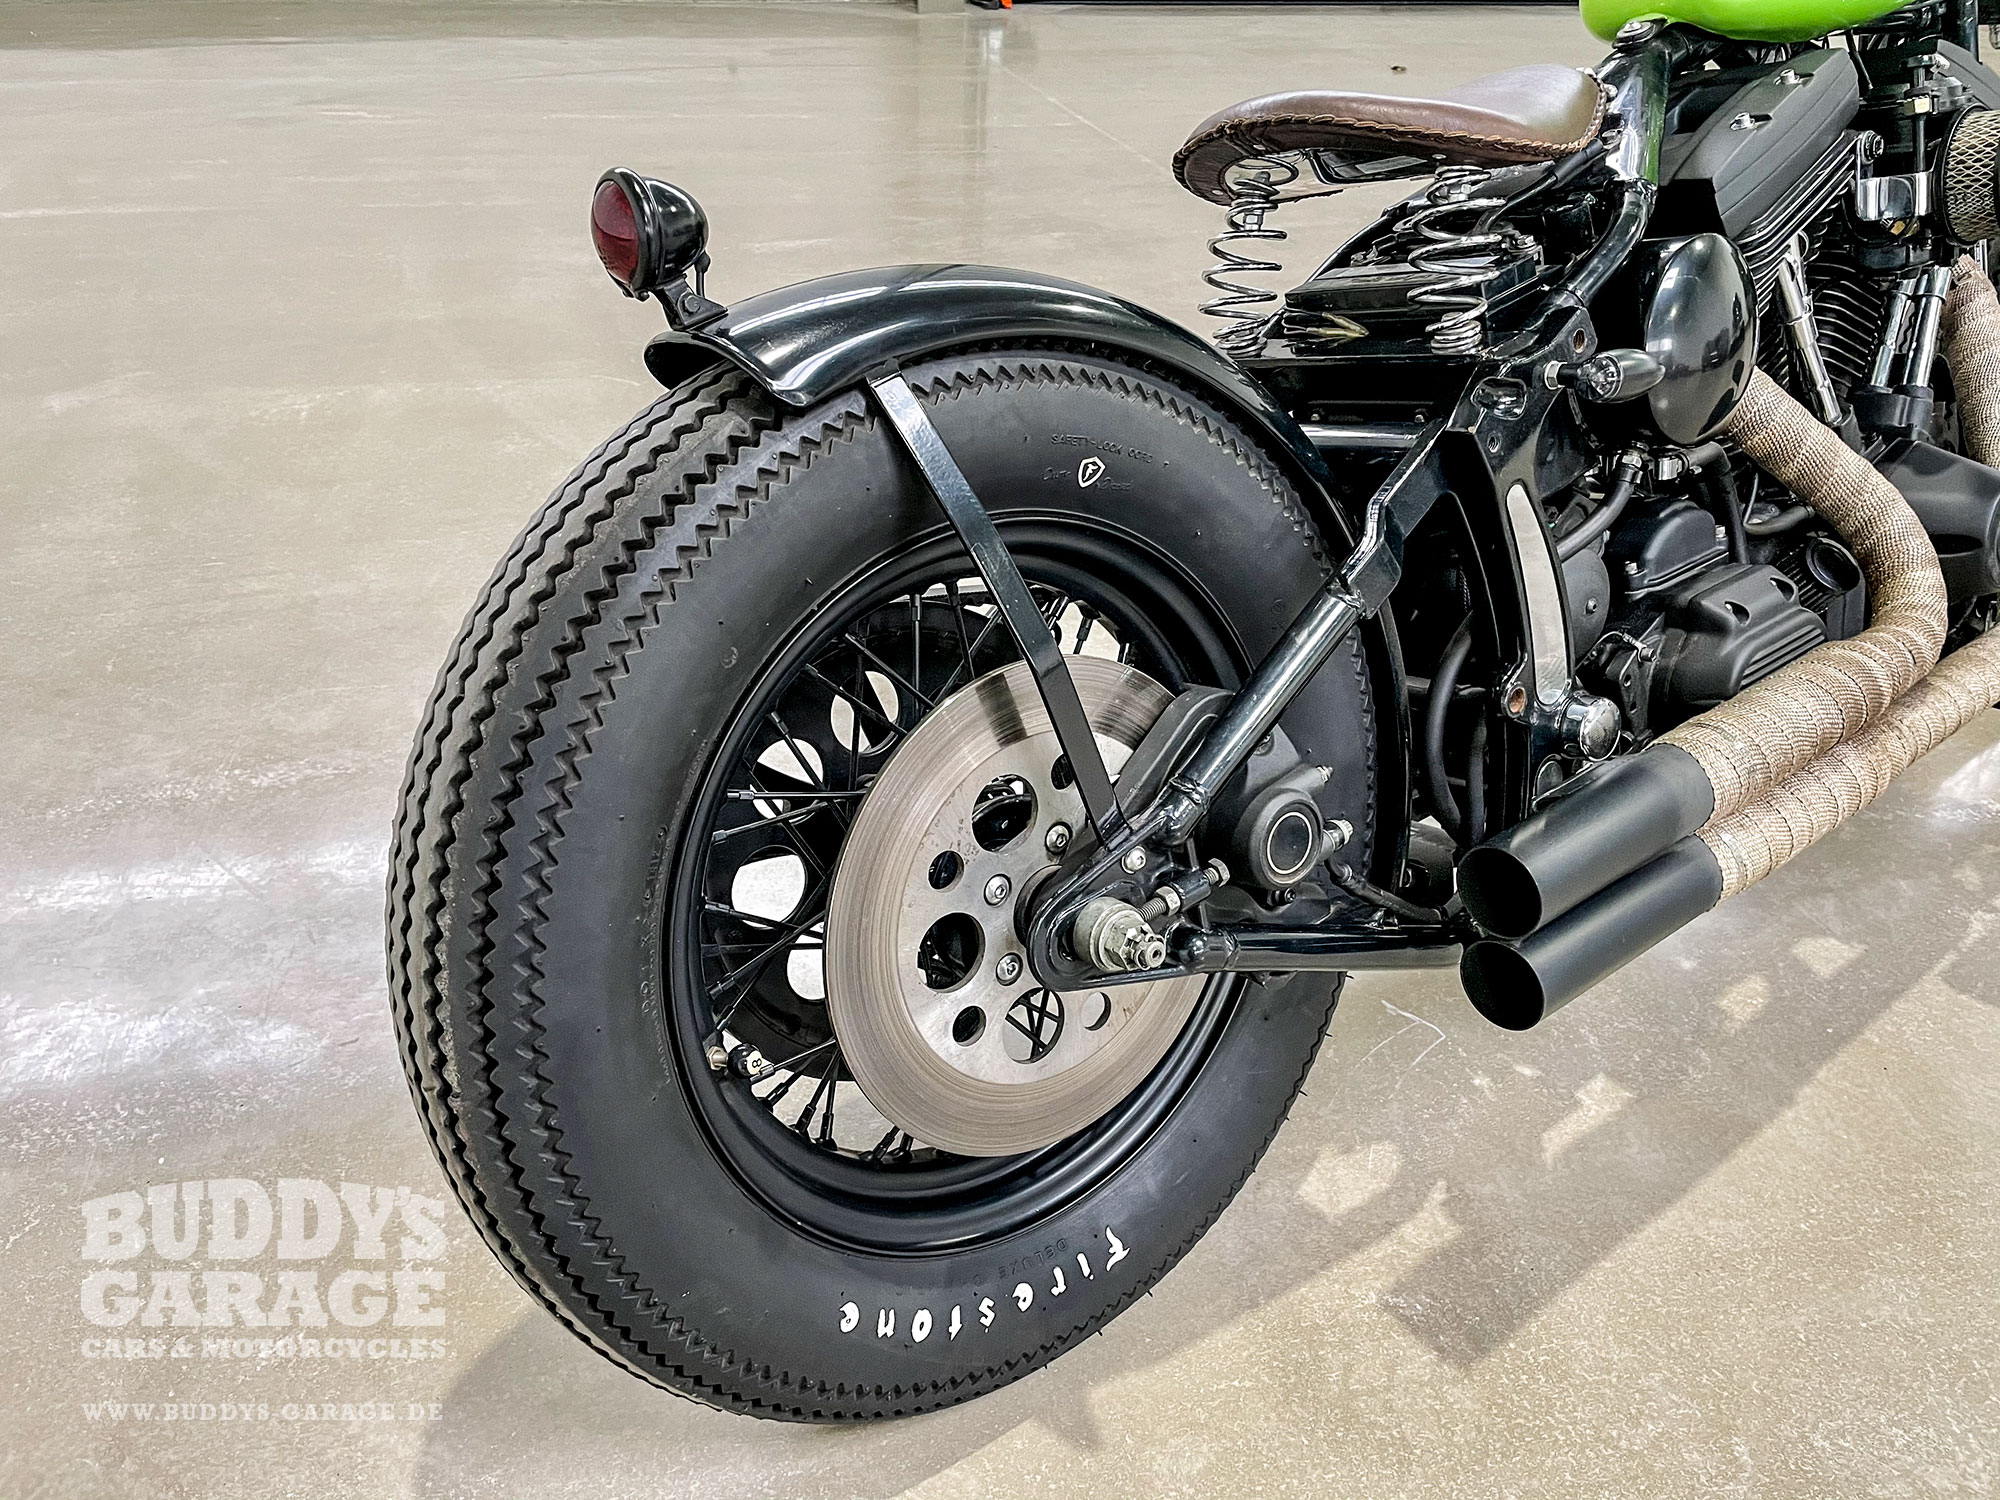 Harley Davidson Werkstatt | Buddy's Garage Bad Oeynhausen